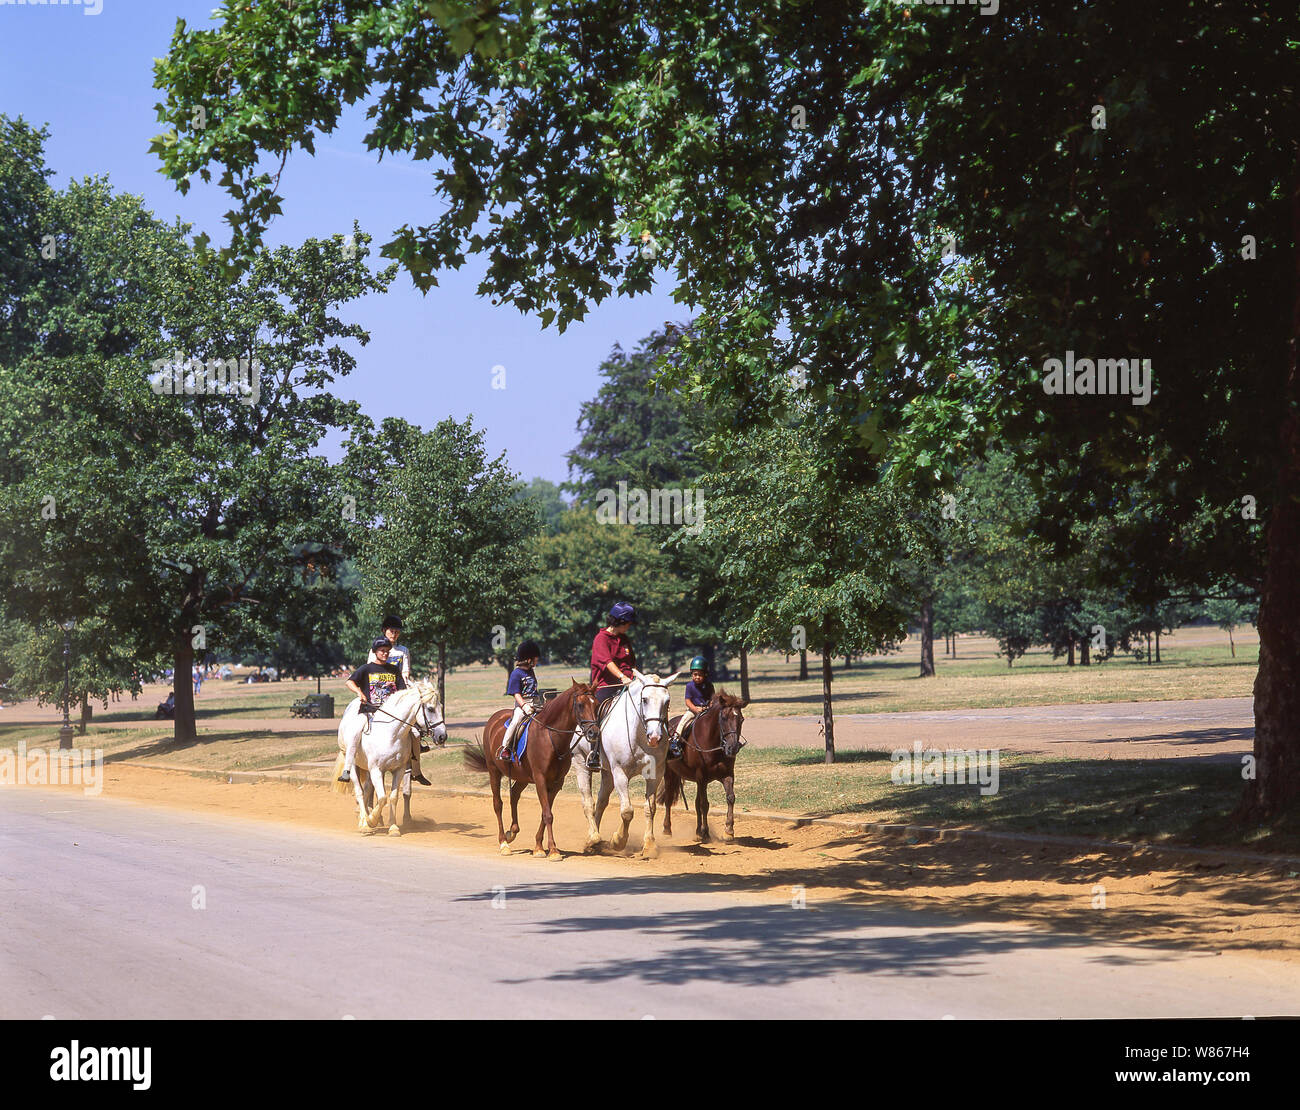 Los niños montar a caballo en Hyde Park, la ciudad de Westminster, London, England, Reino Unido Foto de stock